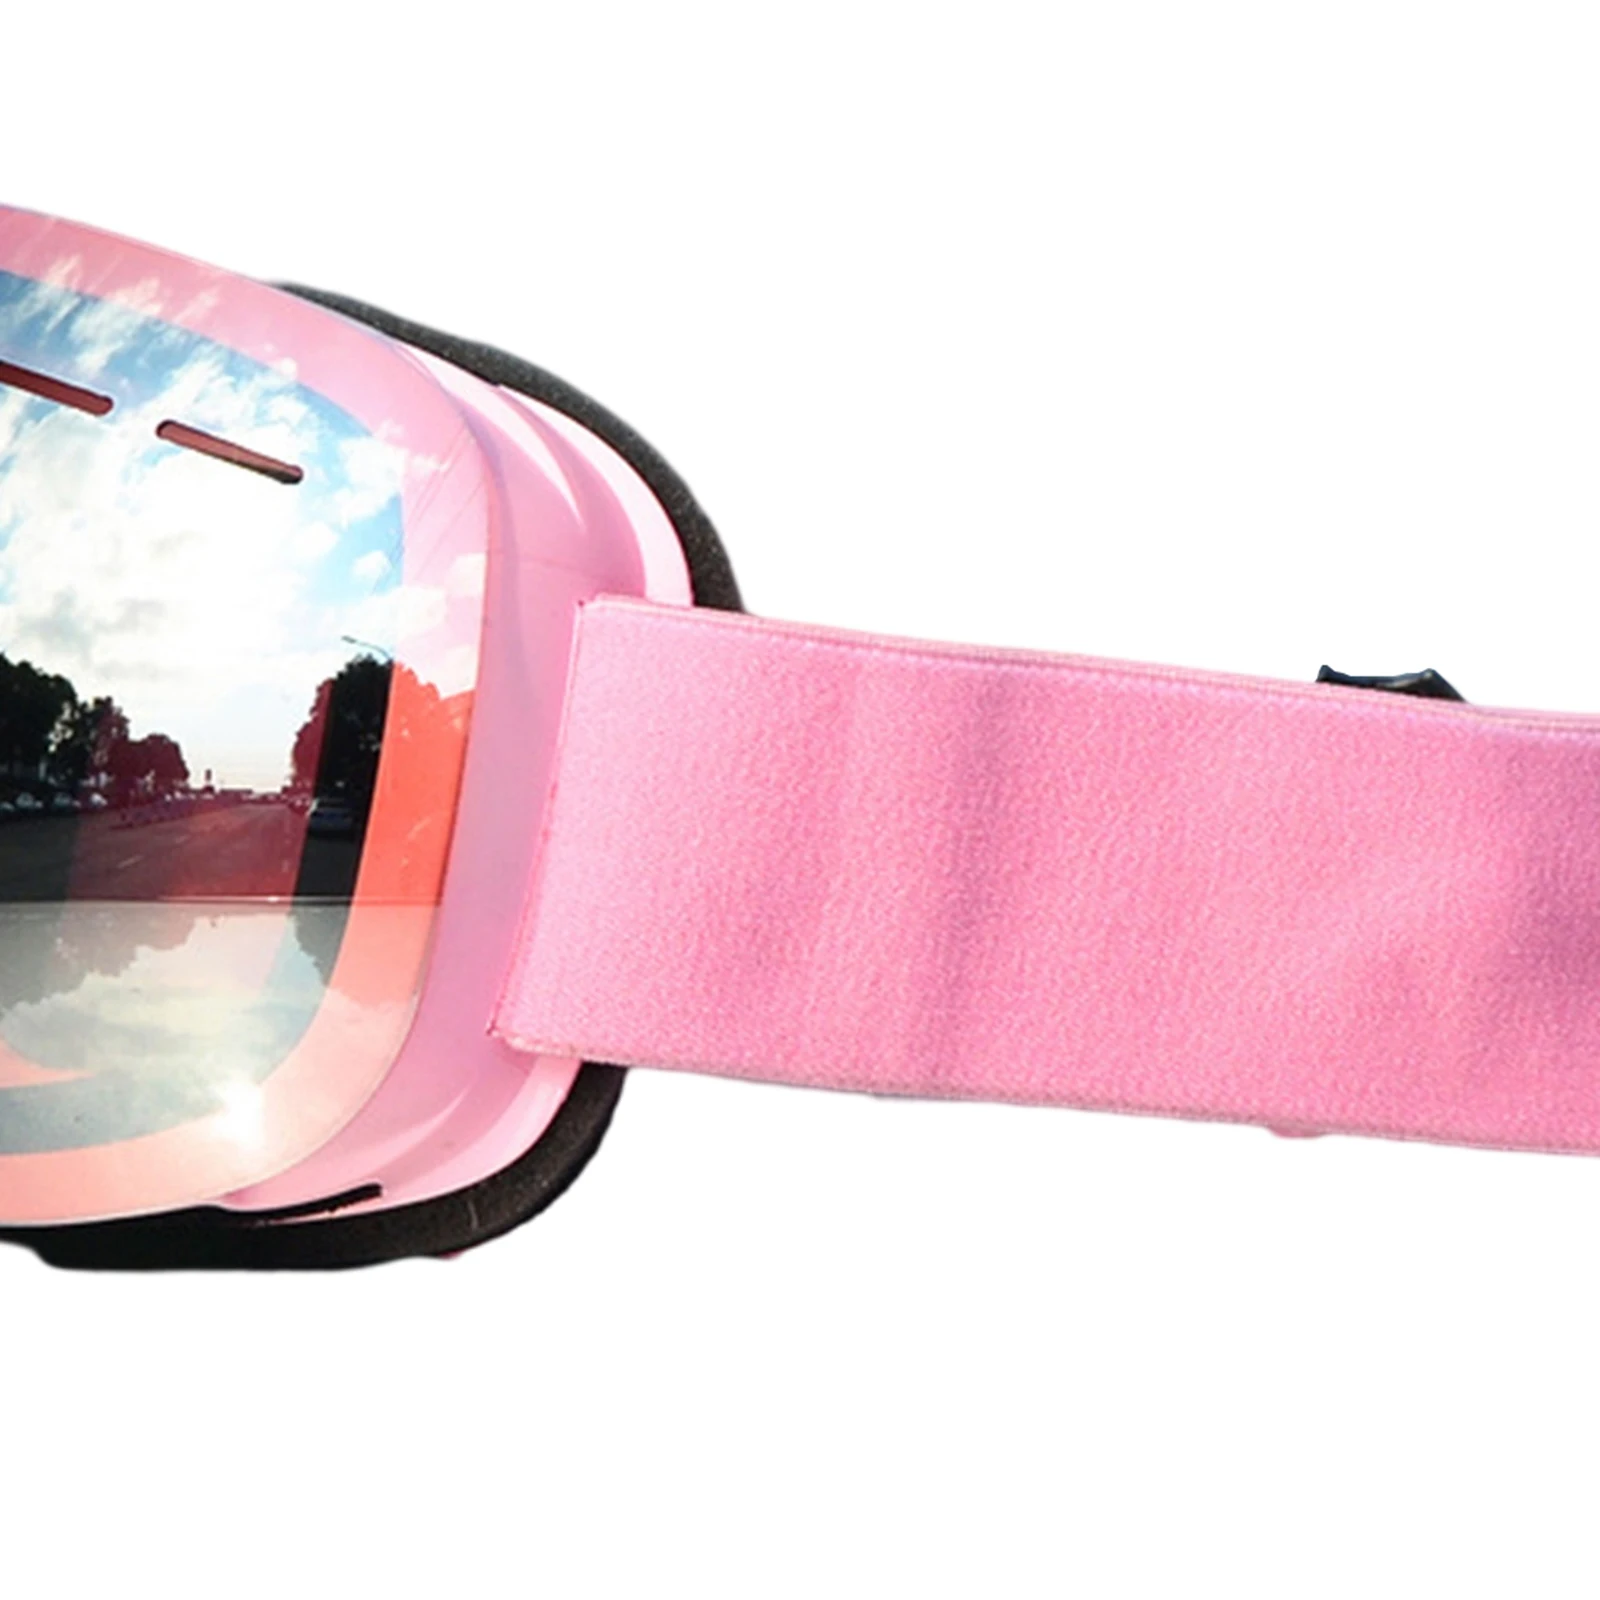 Magnetic Ski Goggles Dustproof Frameless UV Protection Glasses for Skiing